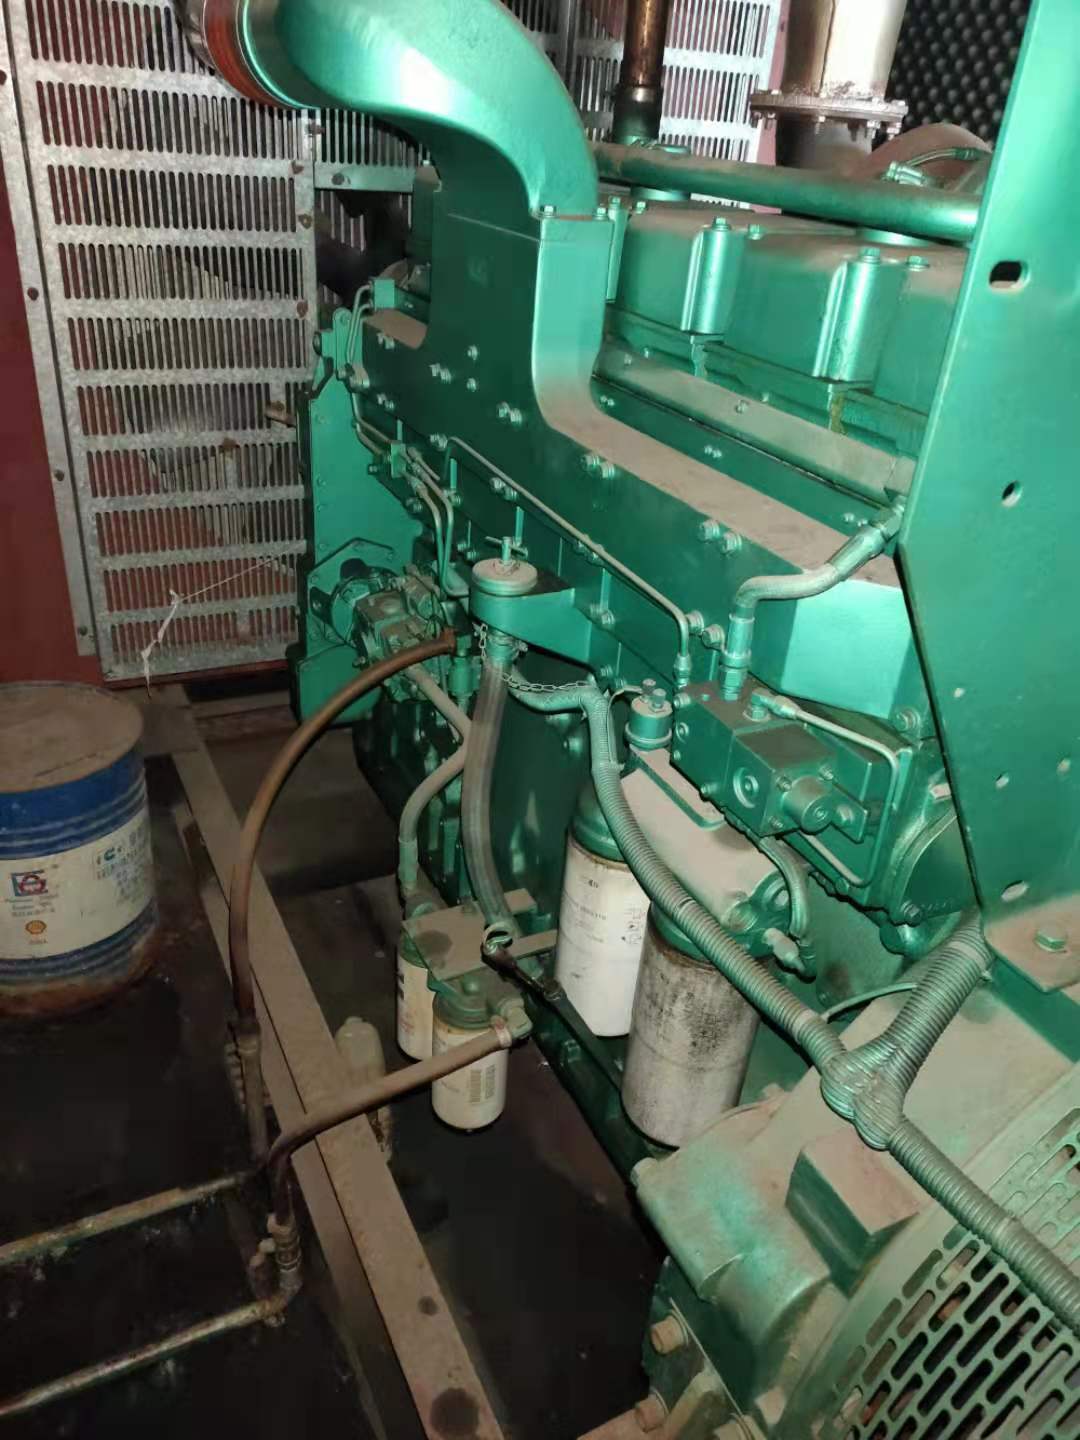 广州变压器回收  惠州变压器回收 深圳惠州变压器回收  东莞变压器回收  佛山变压器回收  珠海变压器回收